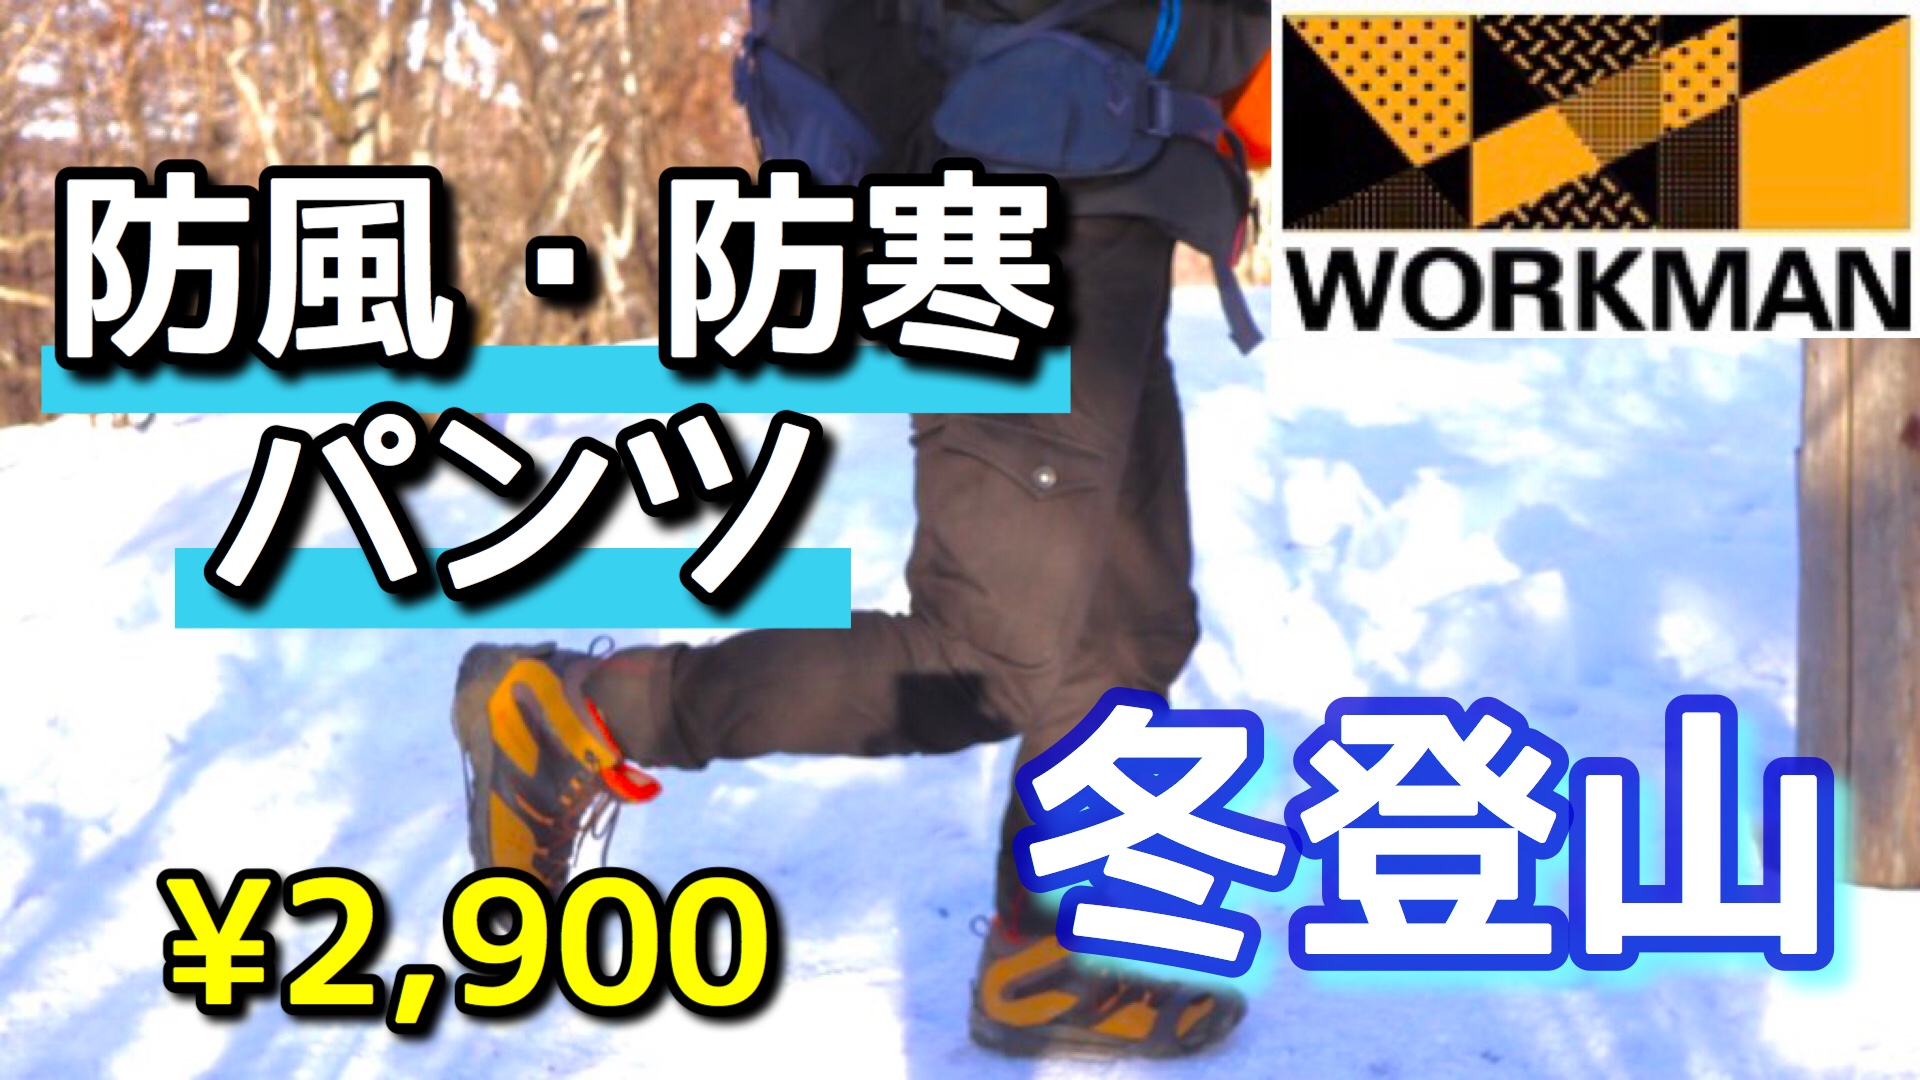 ワークマン 氷点下の冬登山もok 防寒 防風パンツが超おすすめな件 Workman こりおつブログ